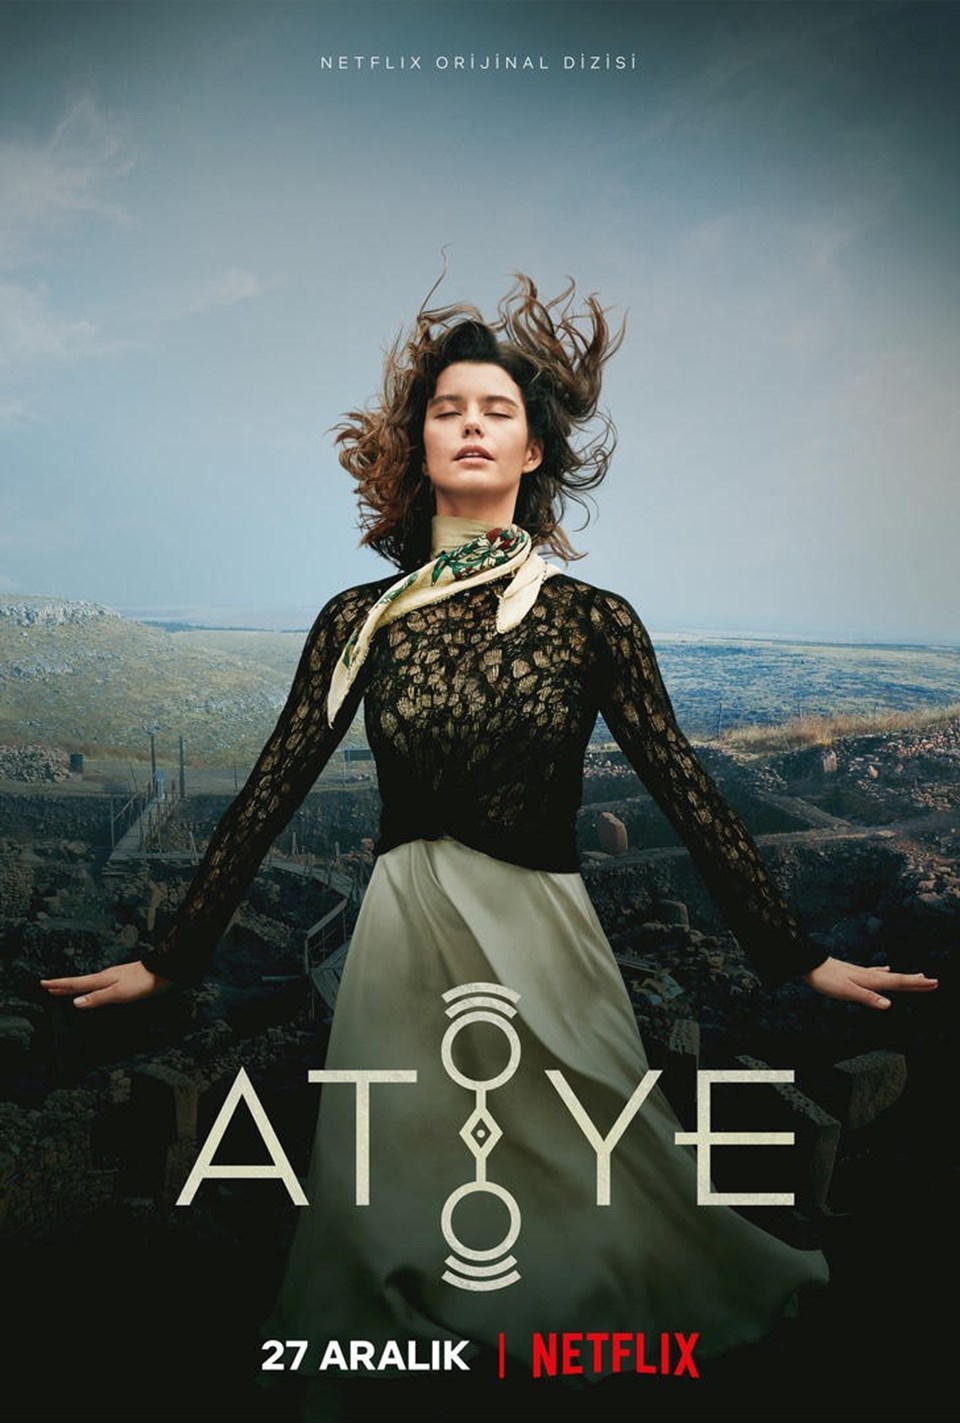 The Gift (Atiye): la serie TV turca sull’arte del dipinto